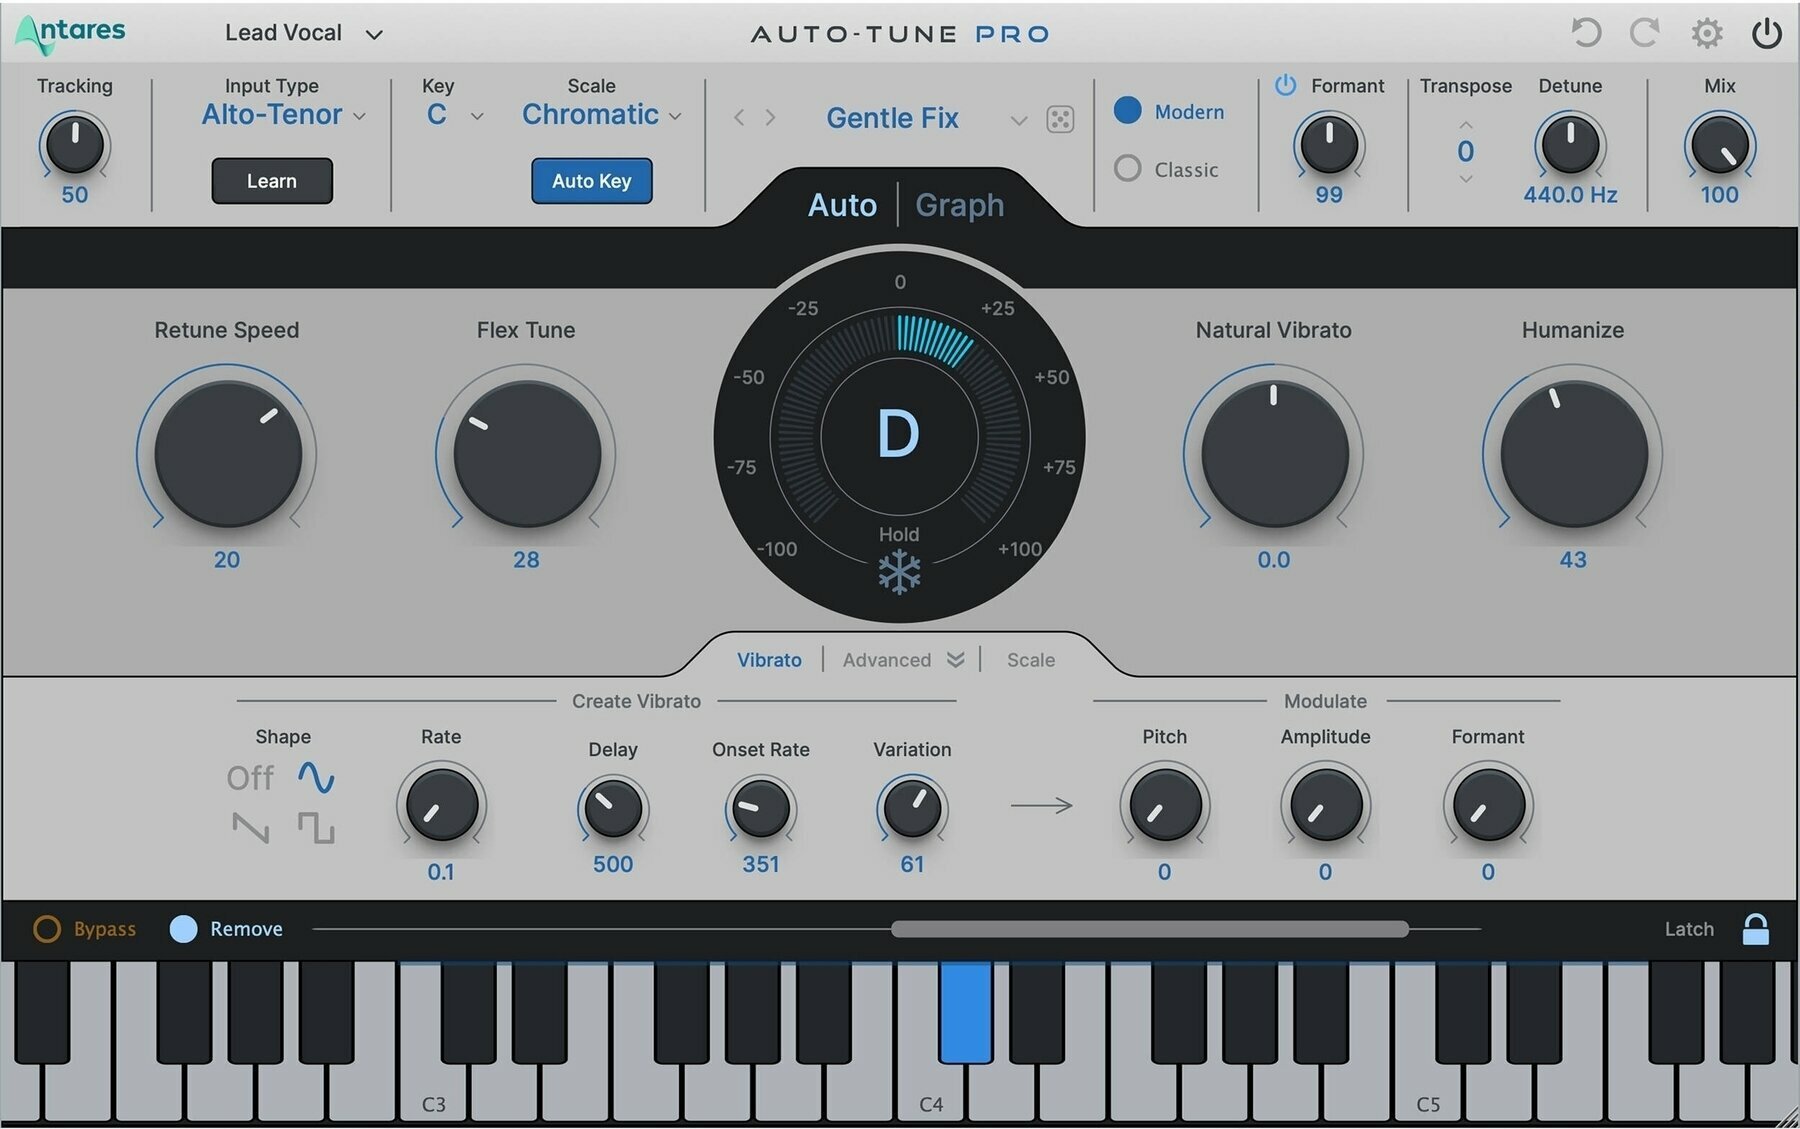 Virtuális hangszer Antares Auto-Tune Vocodist (Digitális termék)